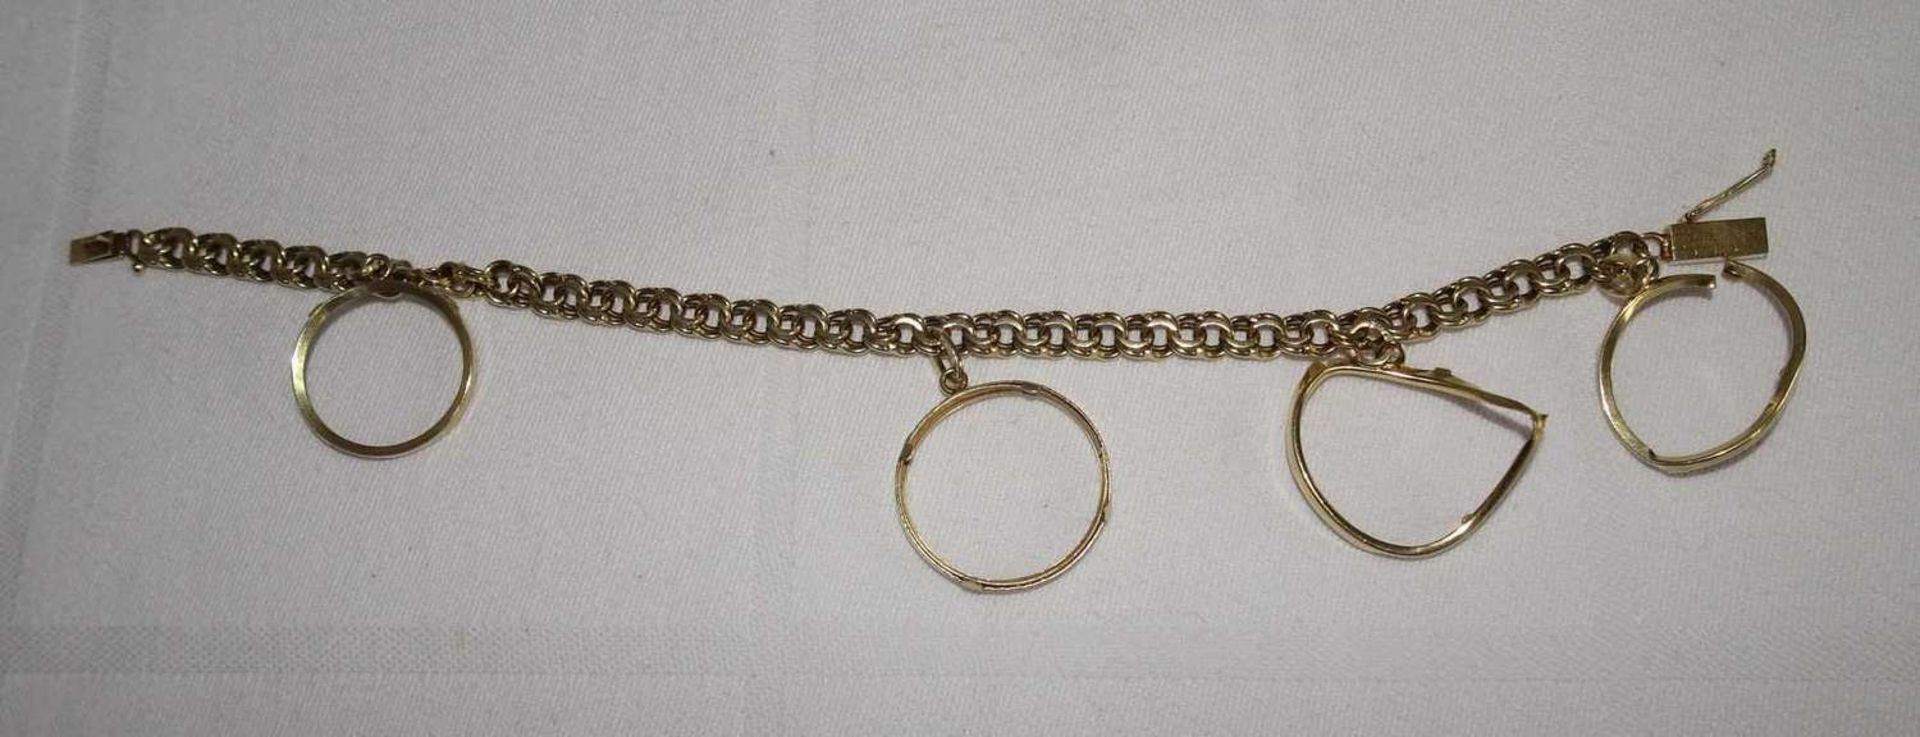 Armband, 585er Gelbgold, Länge ca. 19 cm, mit beschädigten Münzhalterungen. Gewicht ca. 13,8